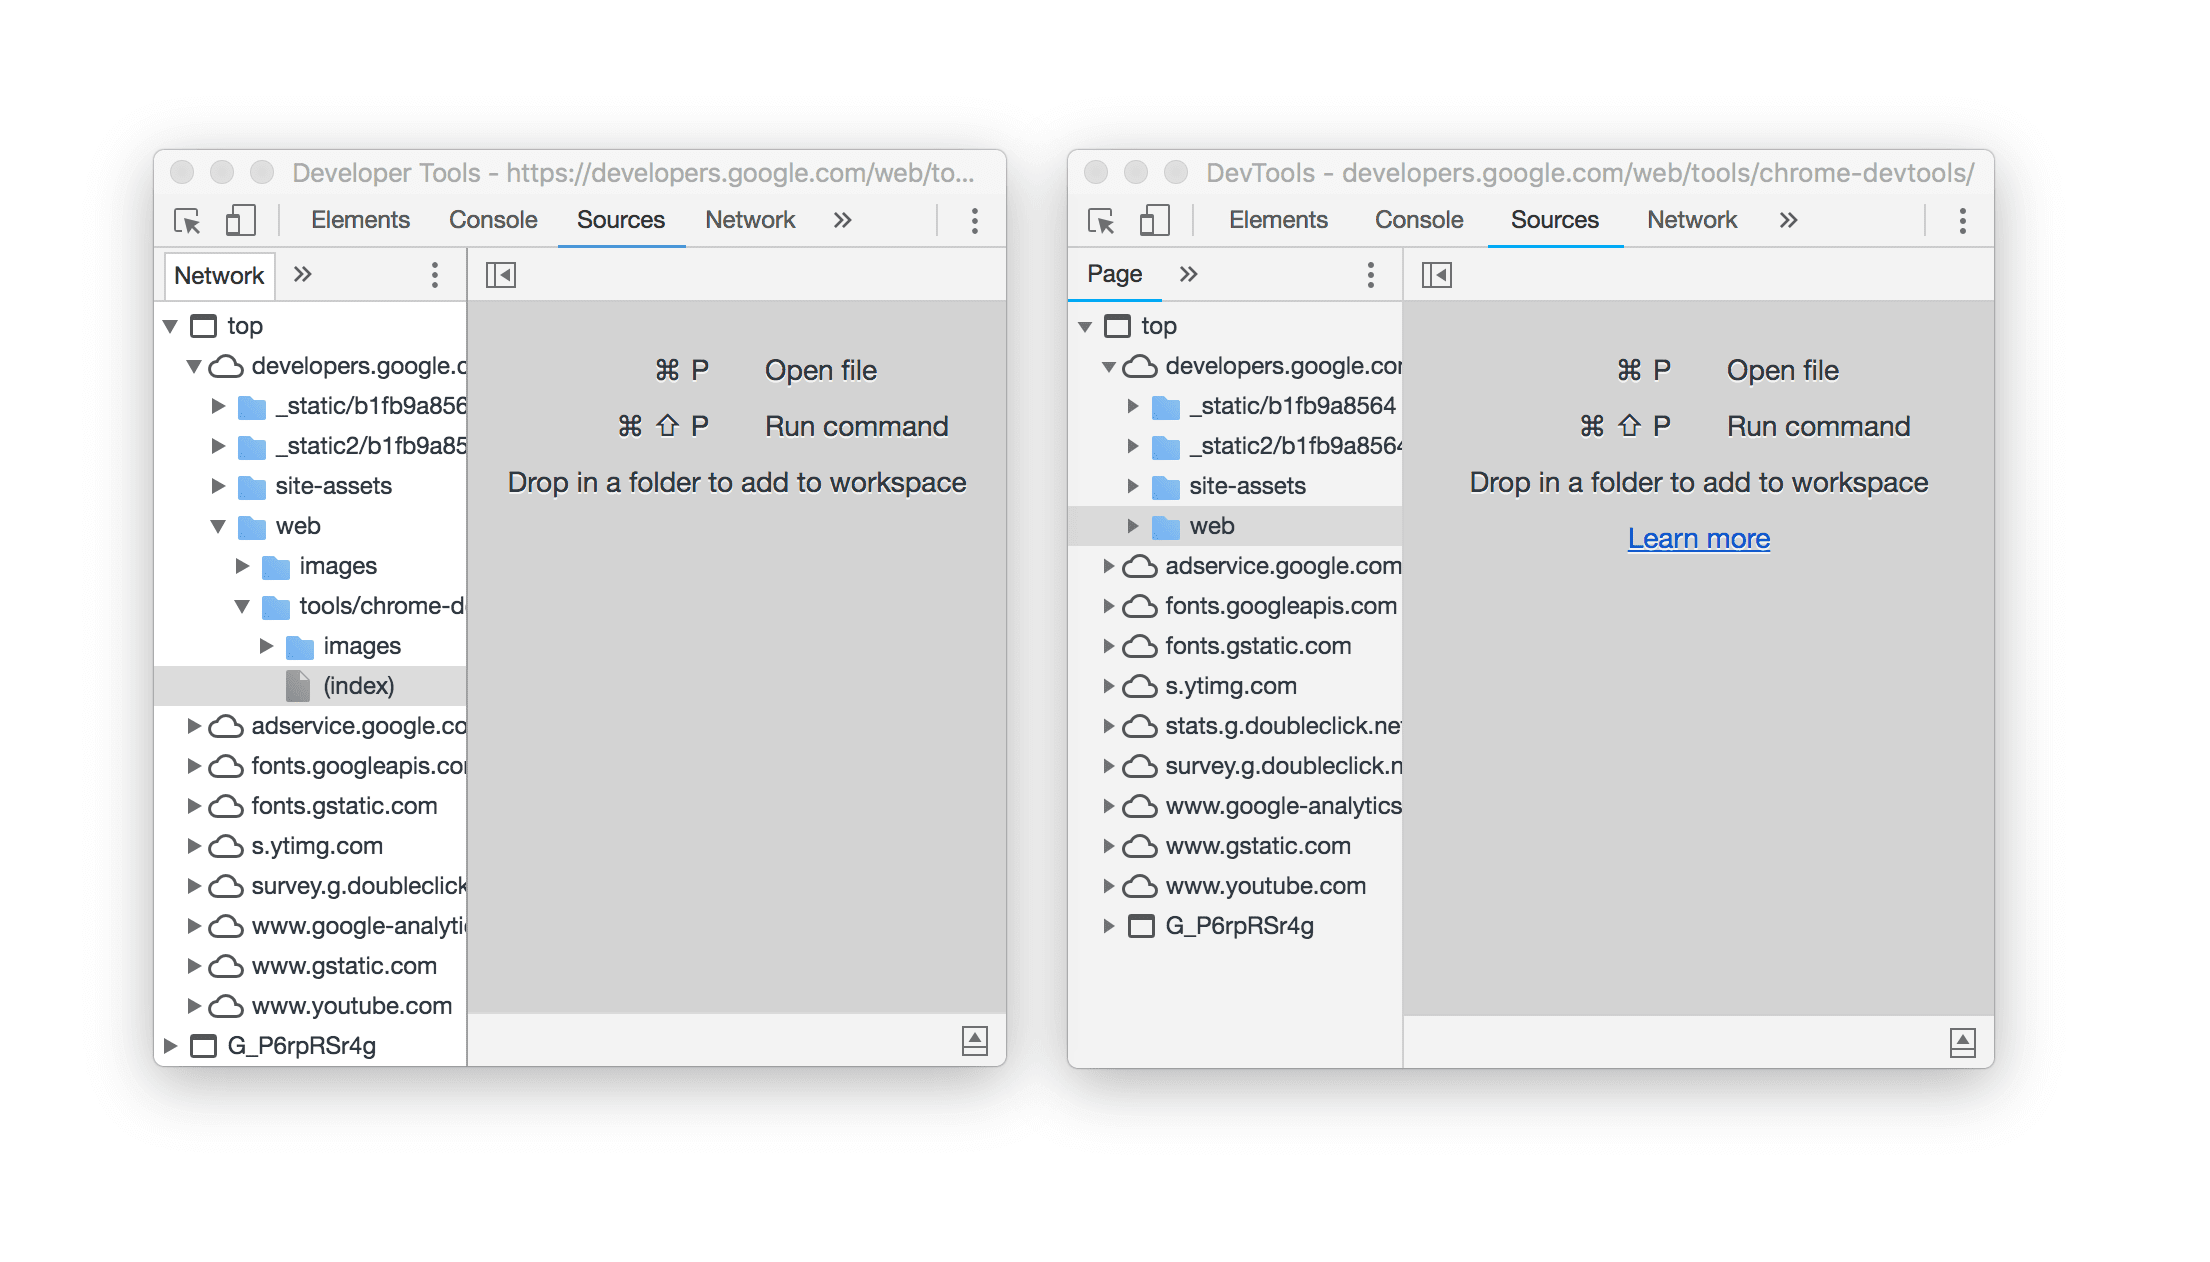 दो DevTools विंडो एक साथ दिख रही हैं. इनमें नाम में हुए बदलाव को दिखाया गया है.